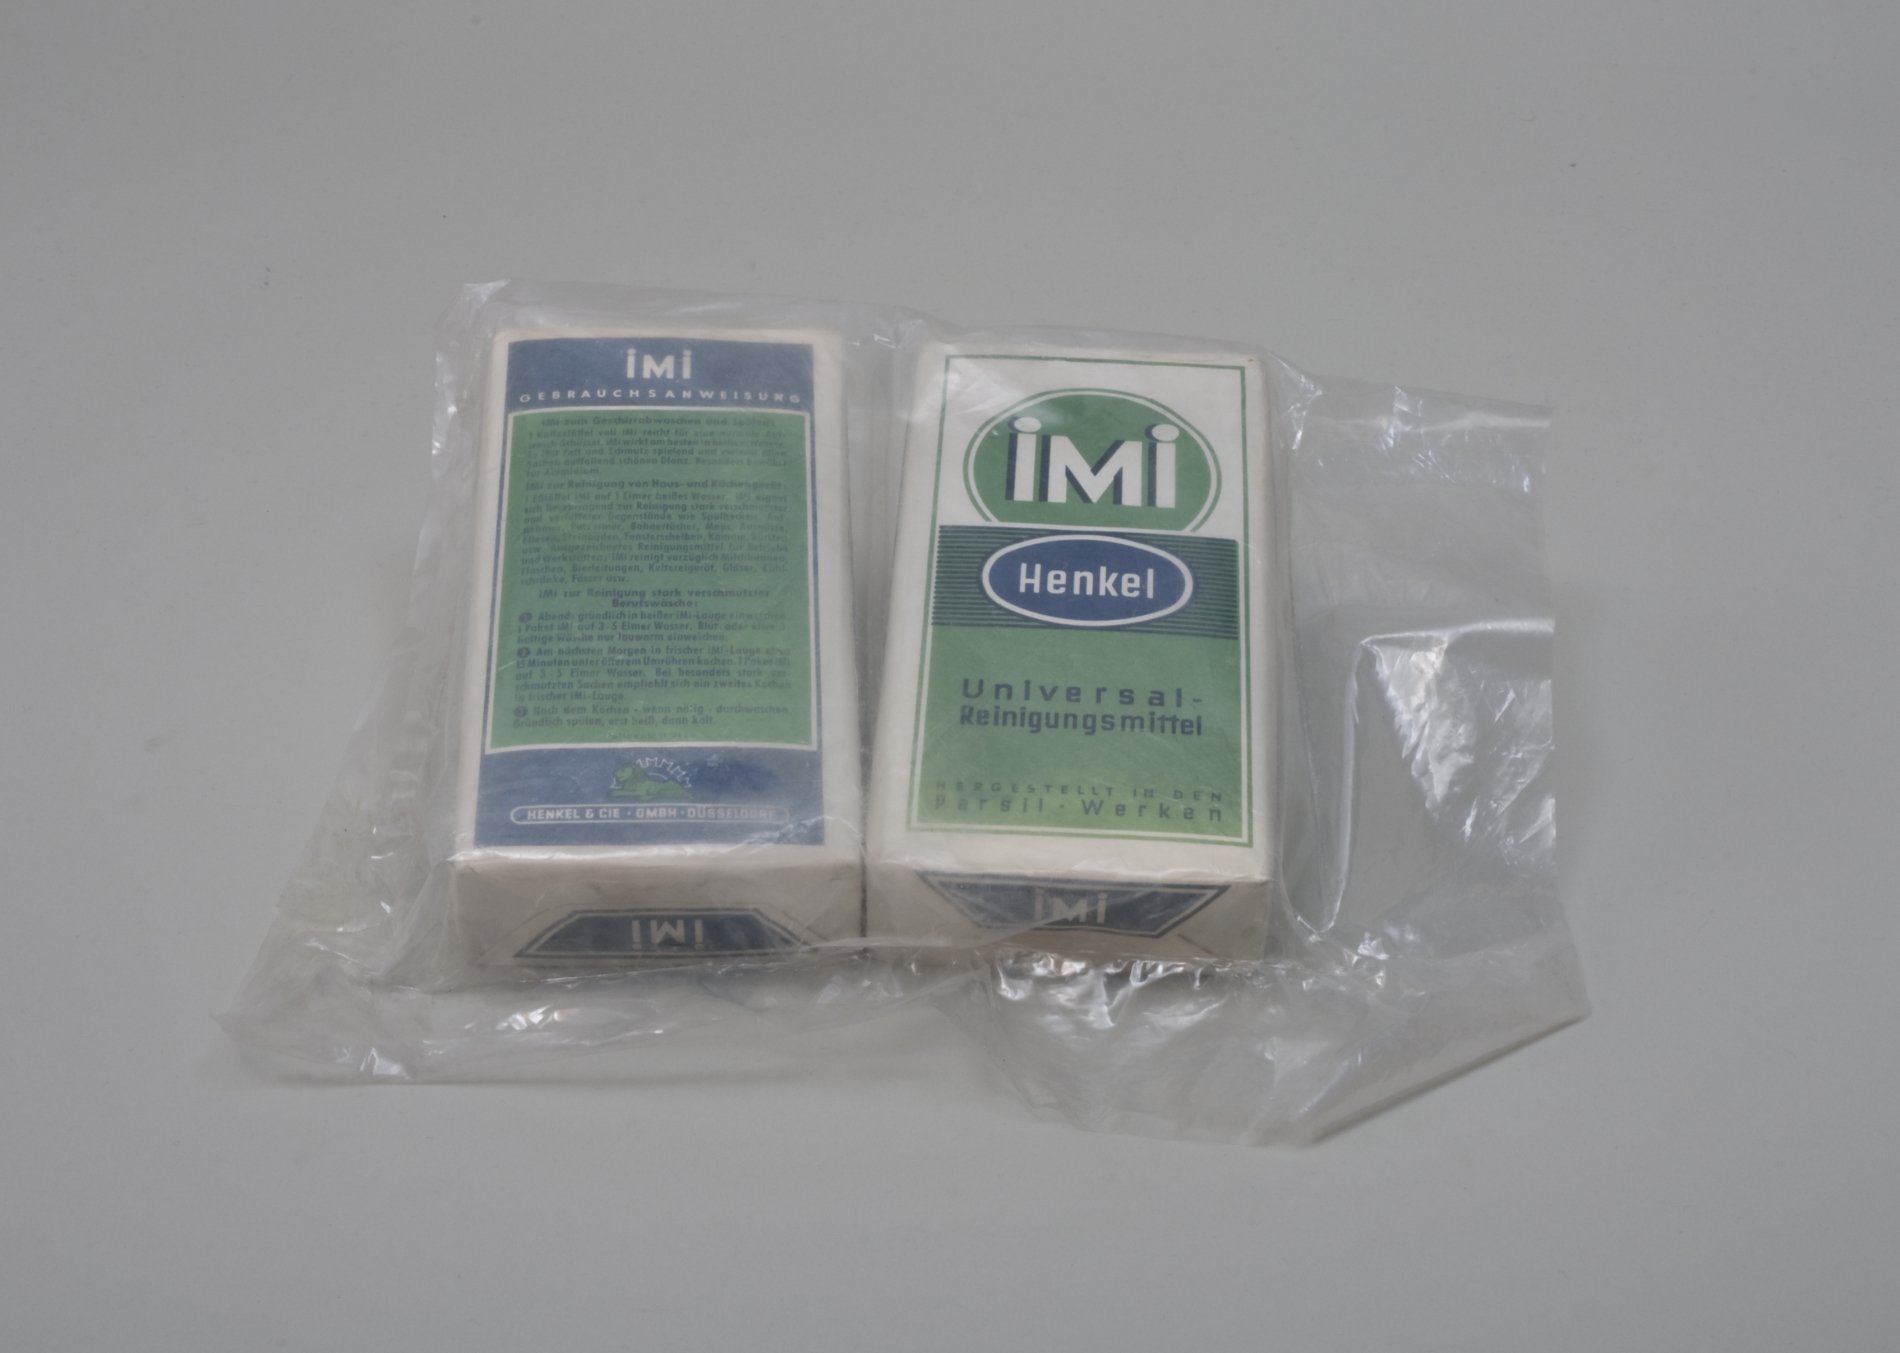 Zwei Packungen Universal-Reinigungsmittel "IMI" (Stiftung Domäne Dahlem - Landgut und Museum, Weiternutzung nur mit Genehmigung des Museums CC BY-NC-SA)